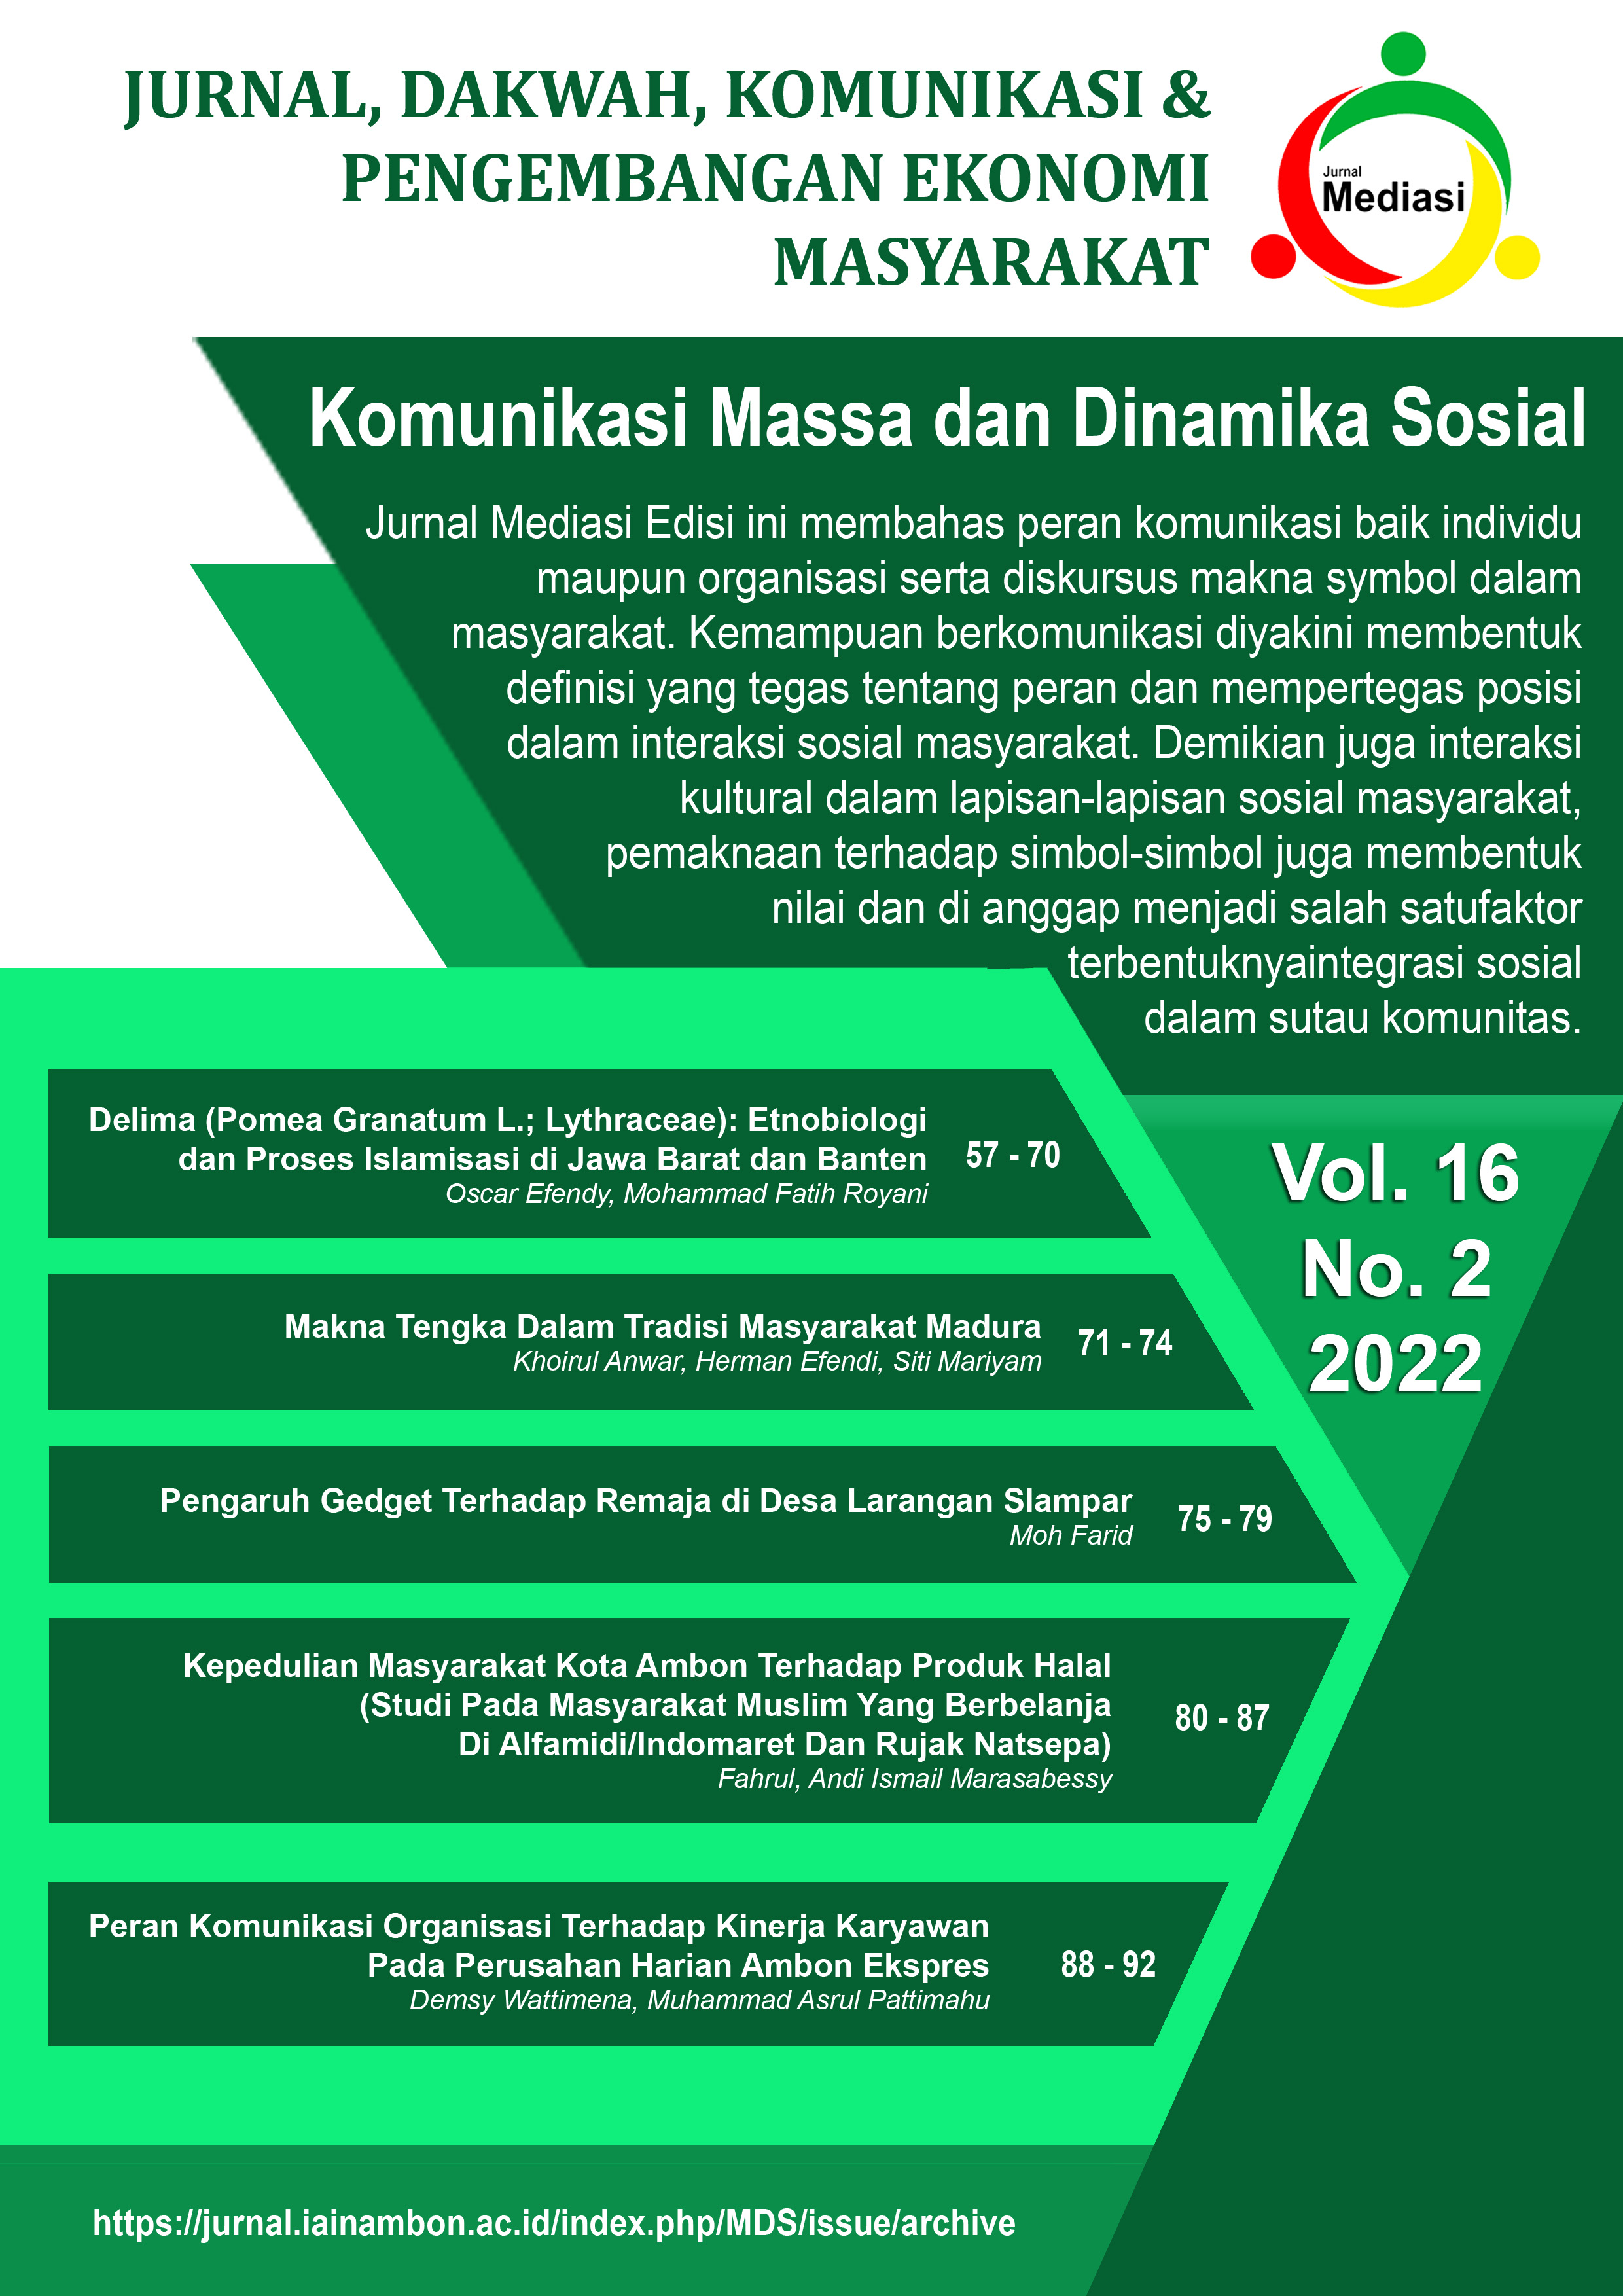 					View Vol. 16 No. 2 (2022): Komunikasi Masa dan Dinamika Sosial
				